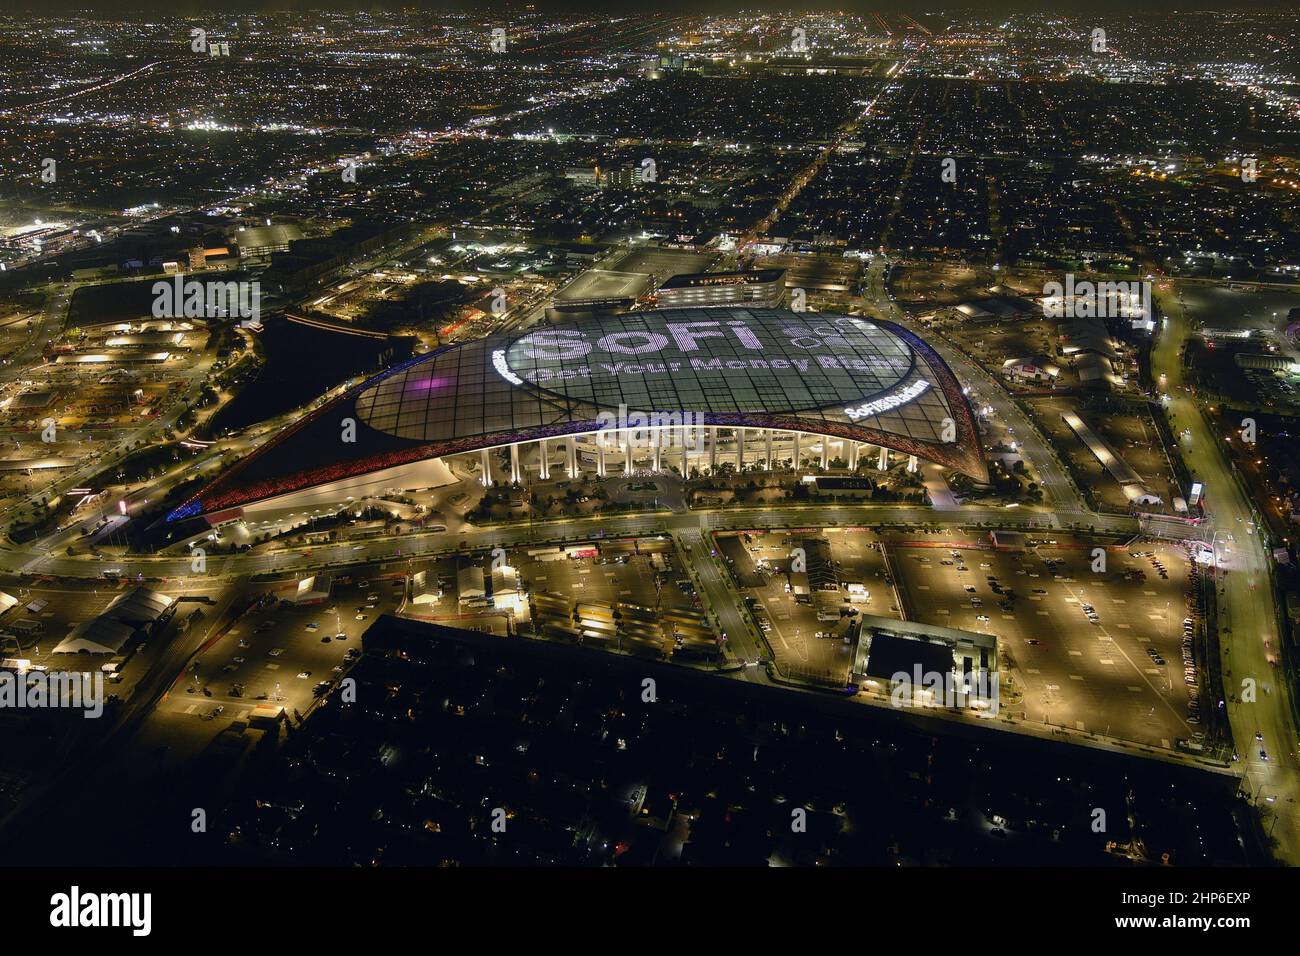 Vista aerea dello stadio SoFi, lunedì 14 febbraio 2022, A Inglewood, California. Foto Stock